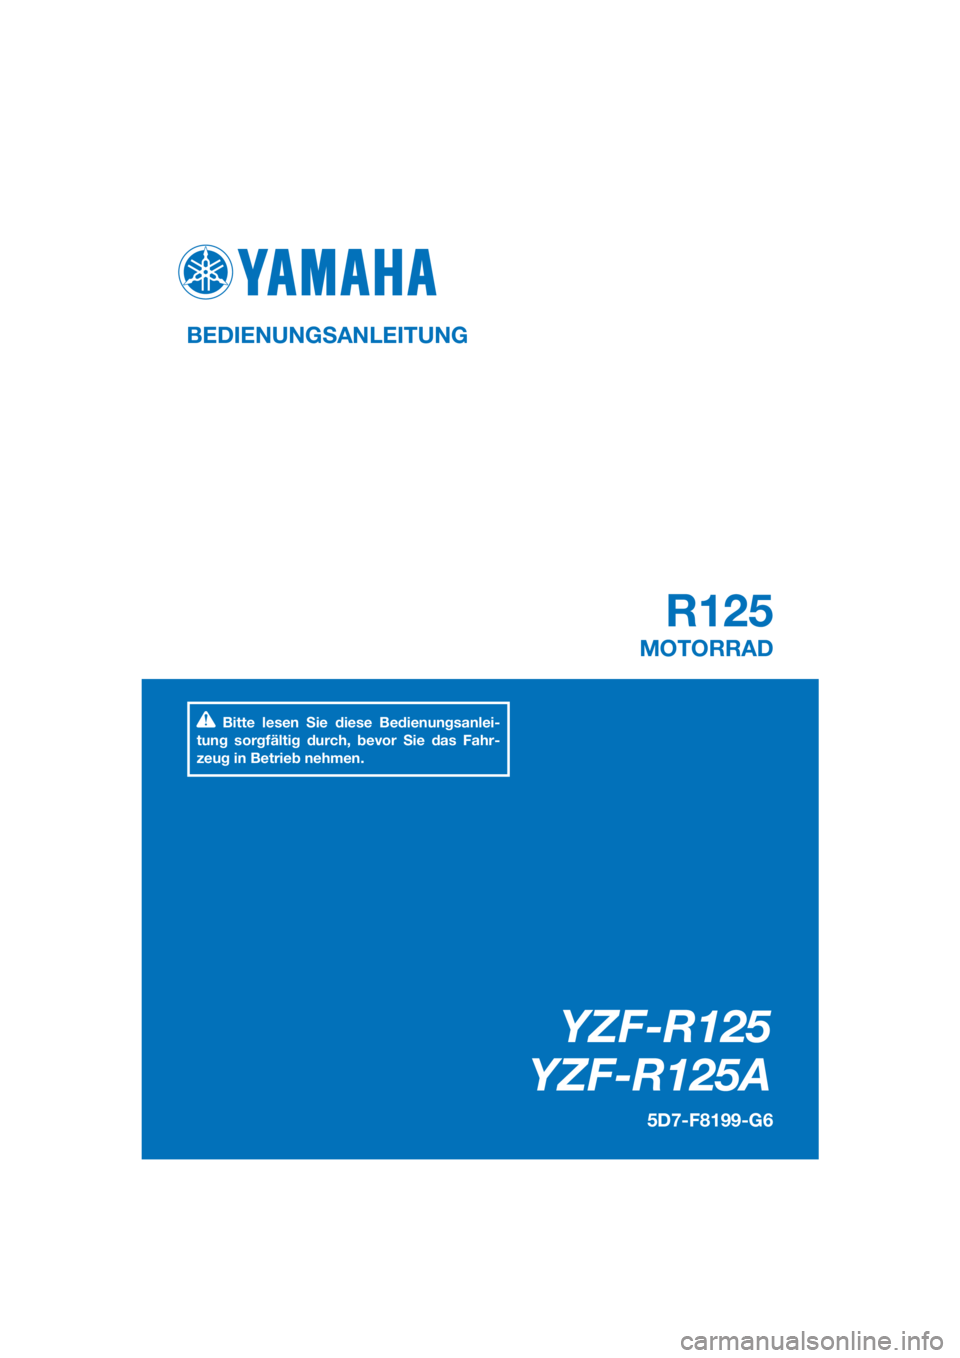 YAMAHA YZF-R125 2016  Betriebsanleitungen (in German) PANTONE285C
YZF-R125
YZF-R125A
R125
BEDIENUNGSANLEITUNG
5D7-F8199-G6
MOTORRAD
Bitte lesen Sie diese Bedienungsanlei-
tung sorgfältig durch, bevor Sie das Fahr-
zeug in Betrieb nehmen.
[German  (G)] 